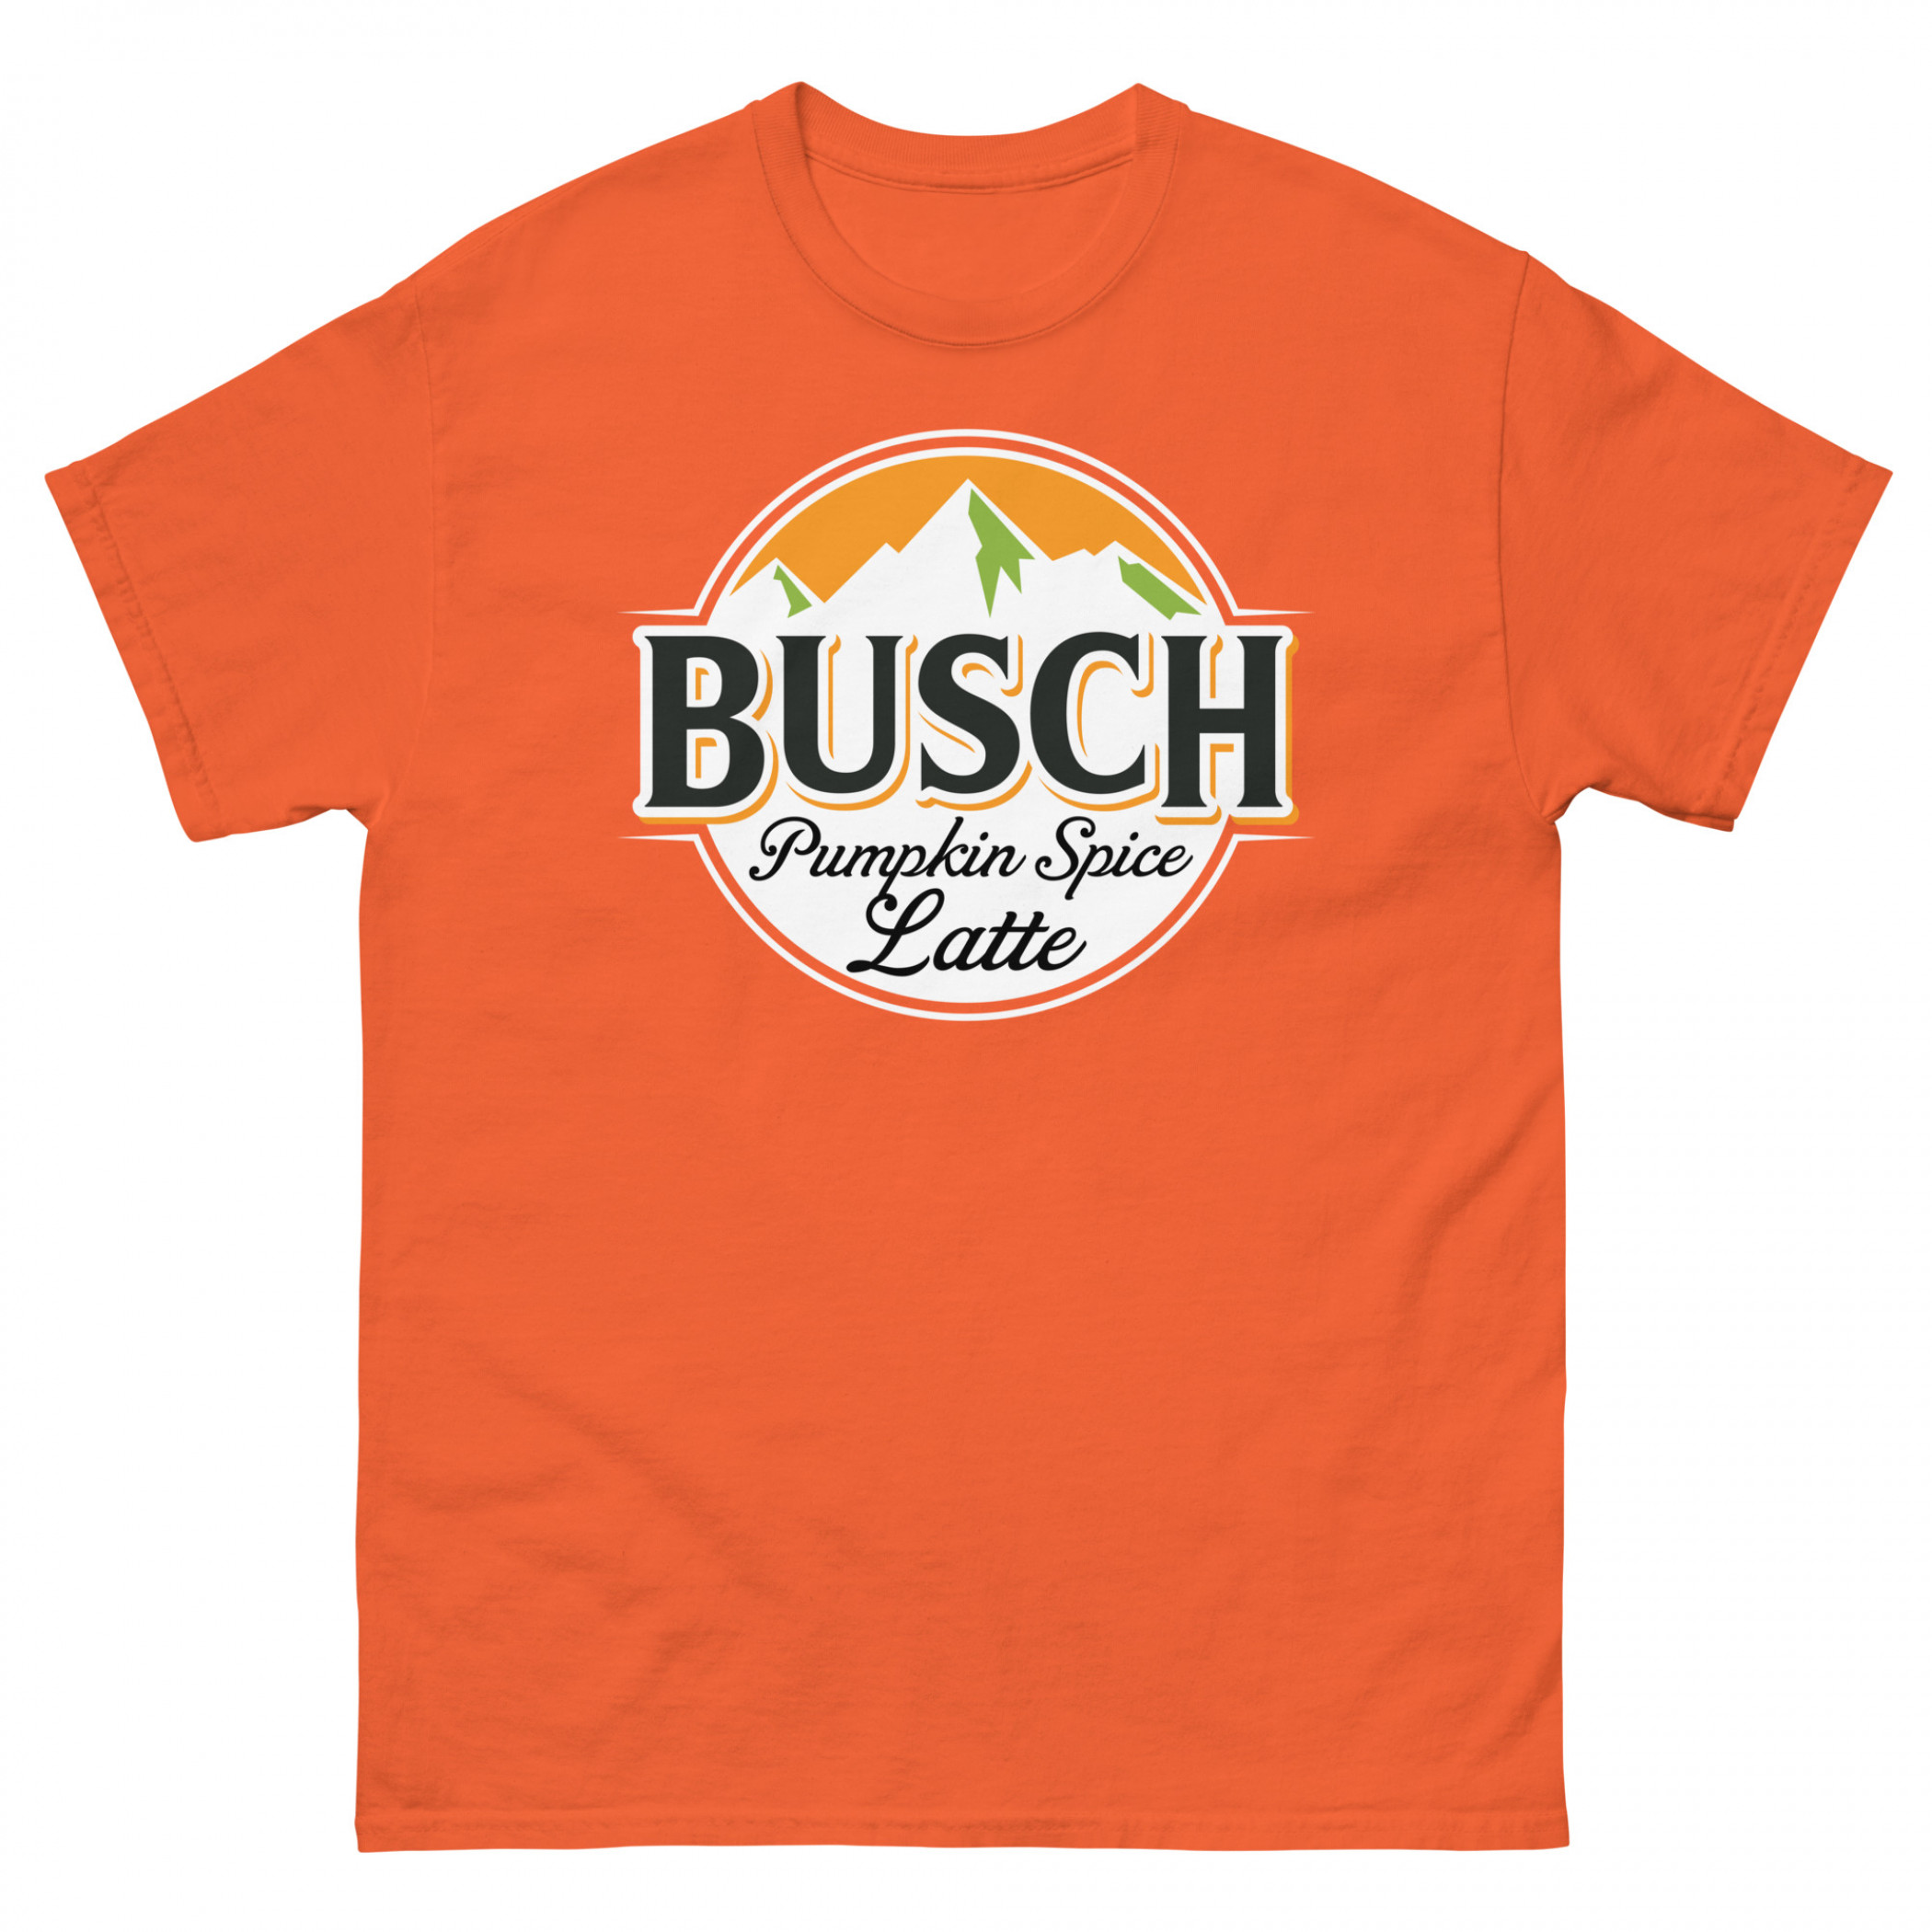 Busch Pumpkin Spice Latte T-Shirt